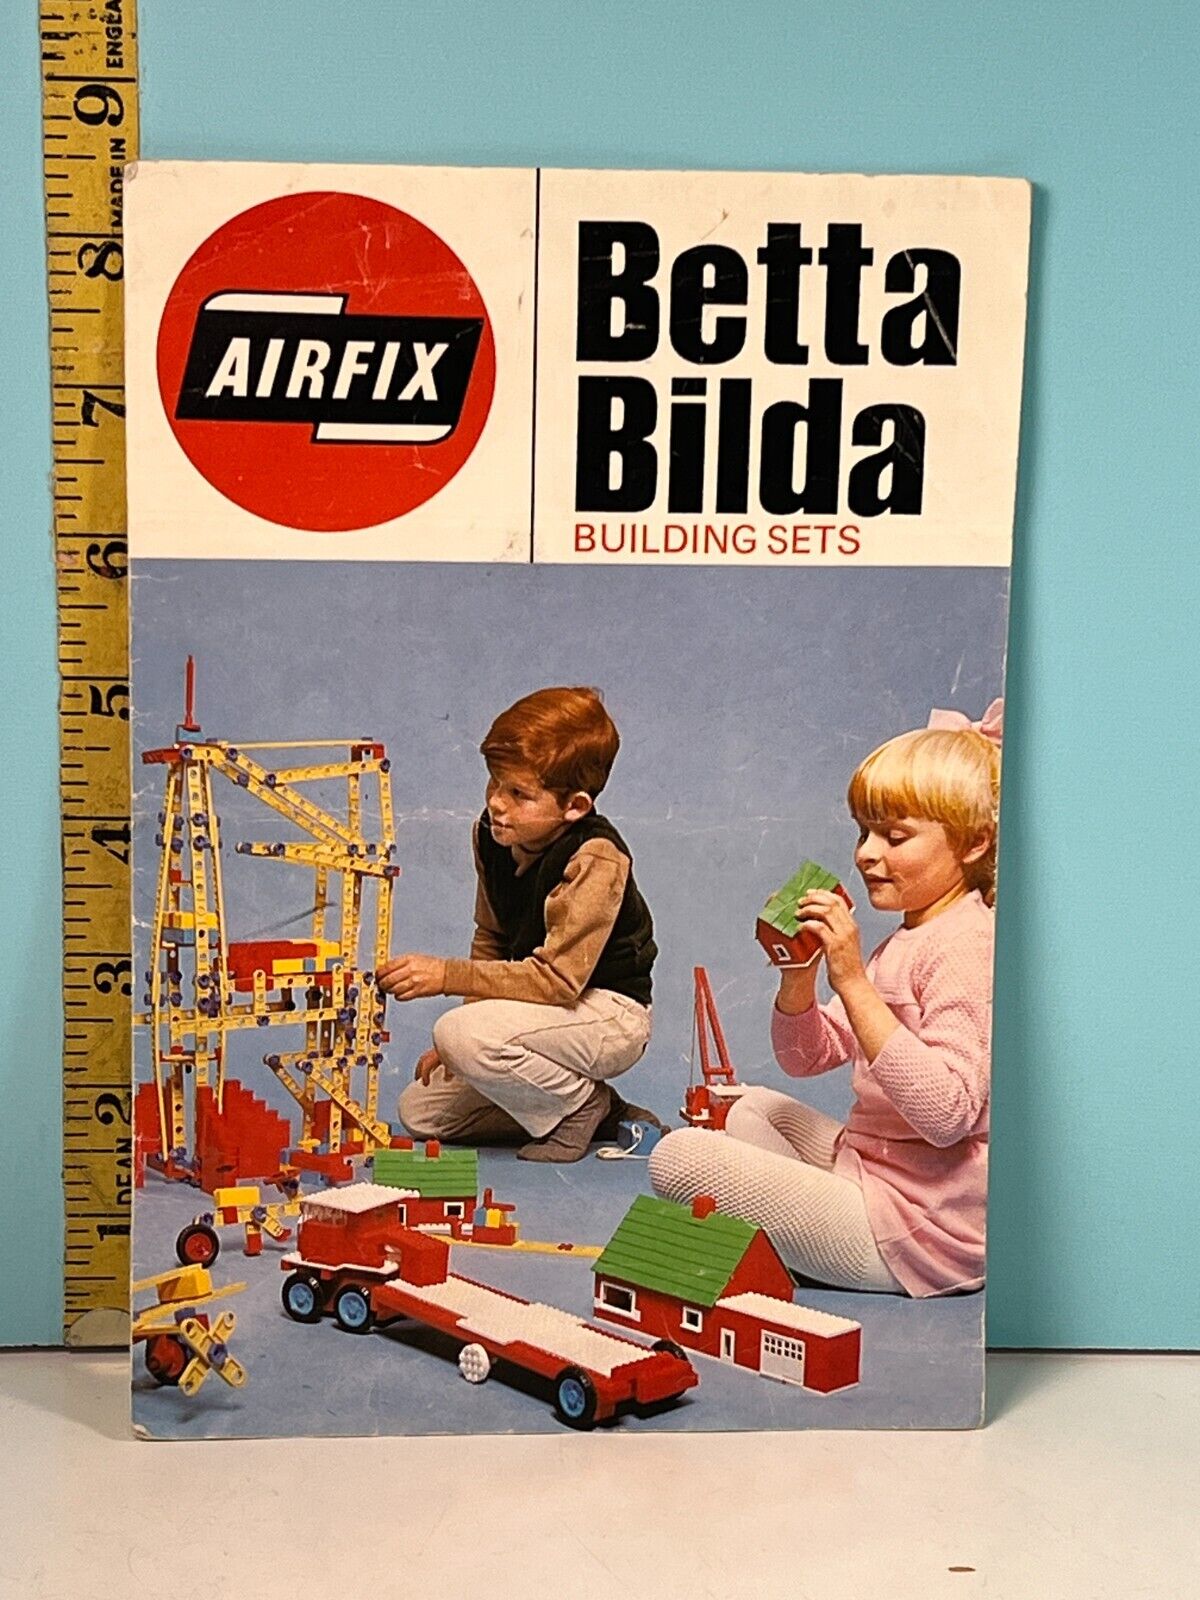 Vintage Airfix Betta Bilda Building Sets Booklet